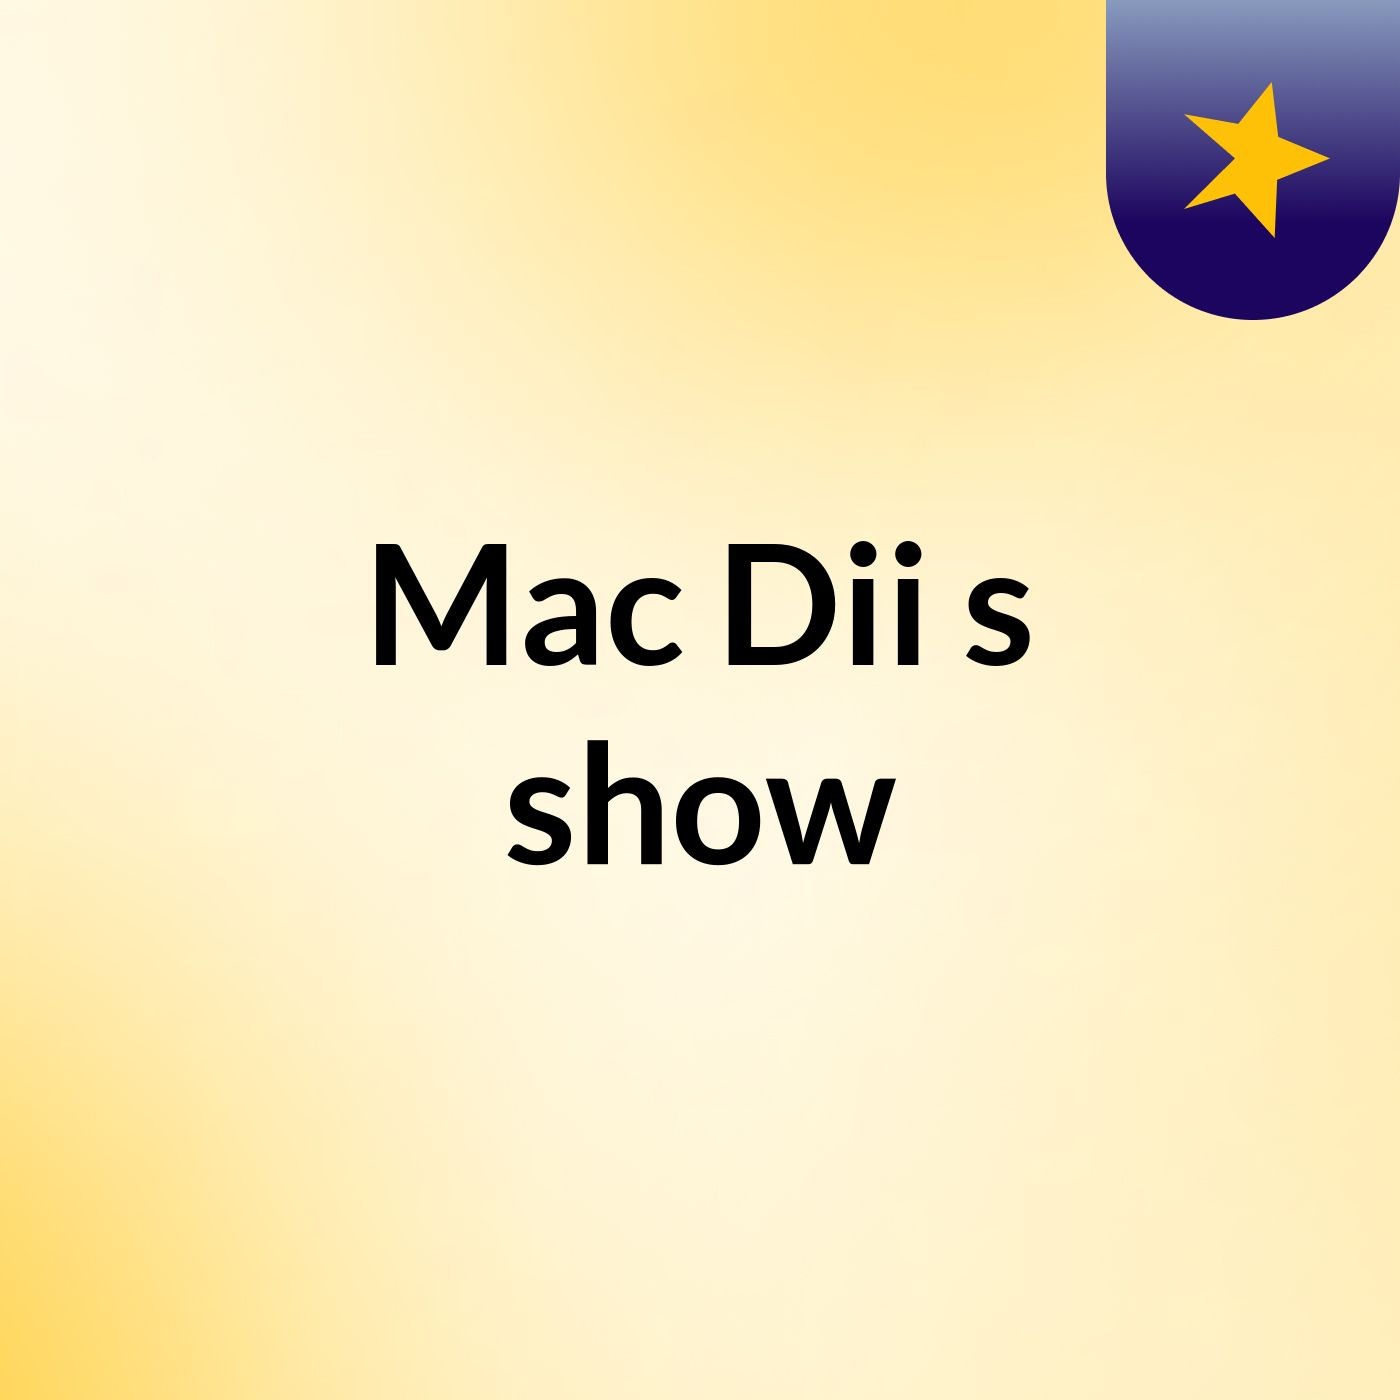 Mac Dii's show